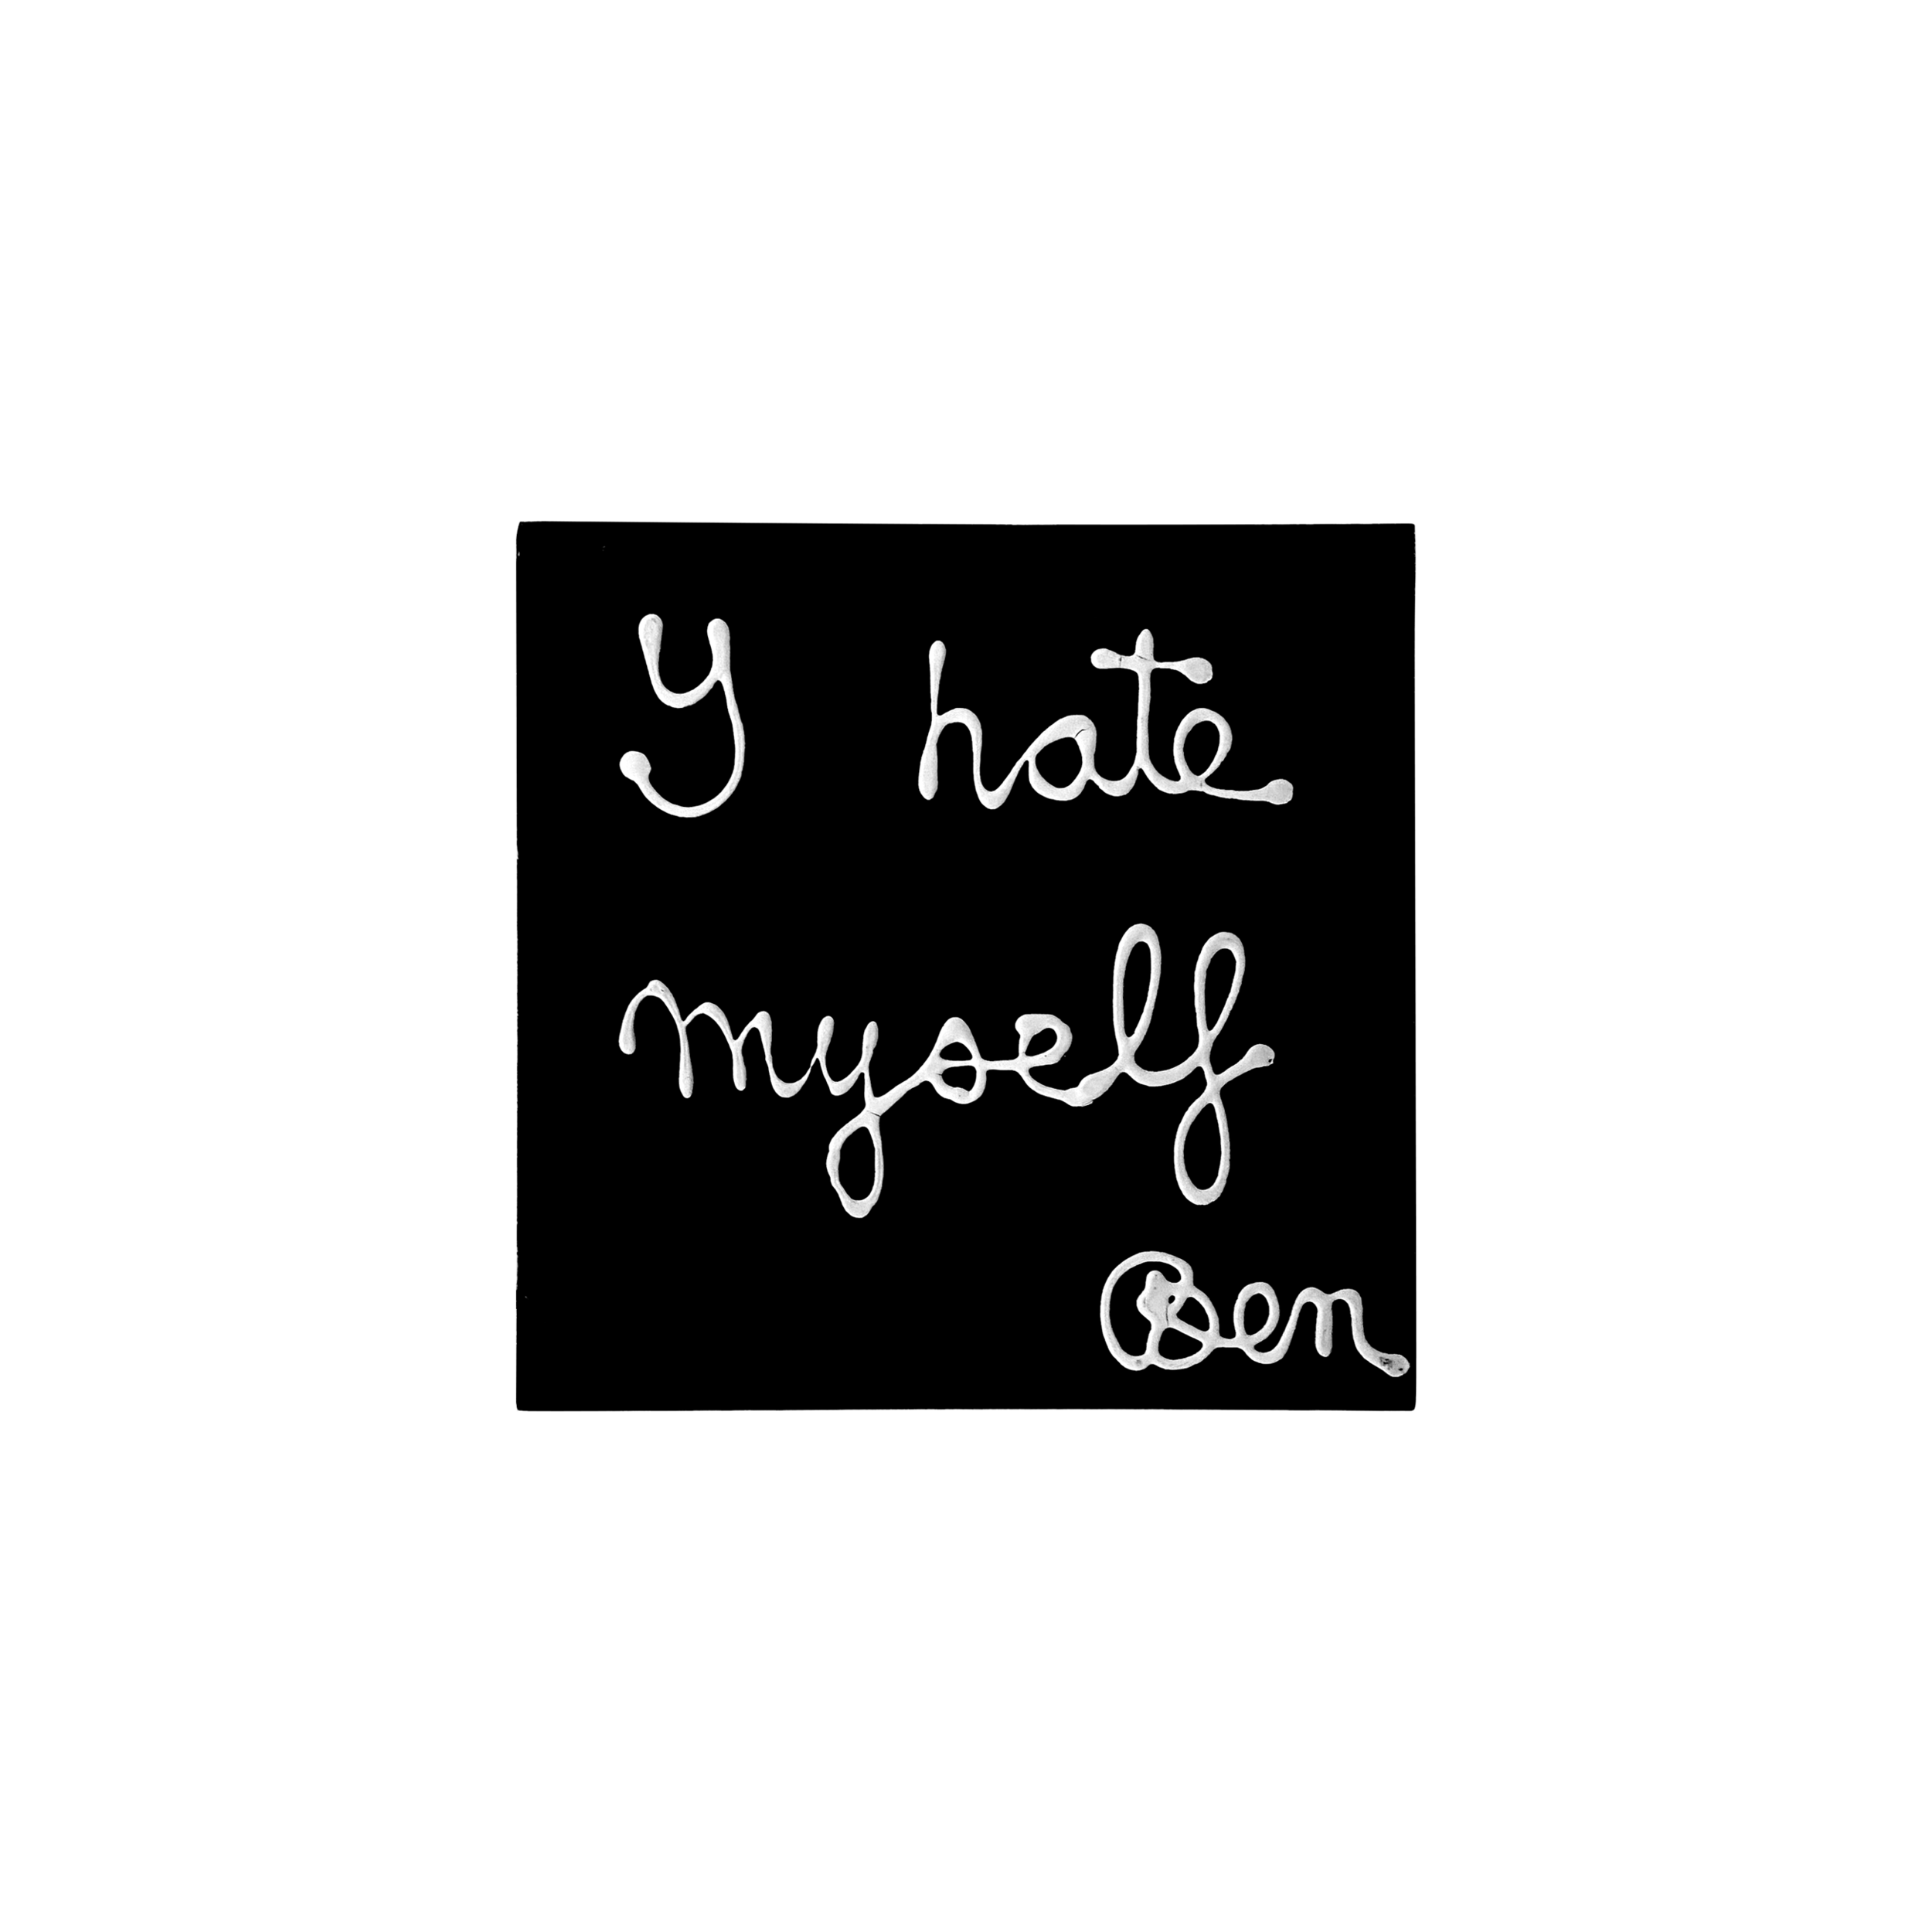 "Y hate myself”